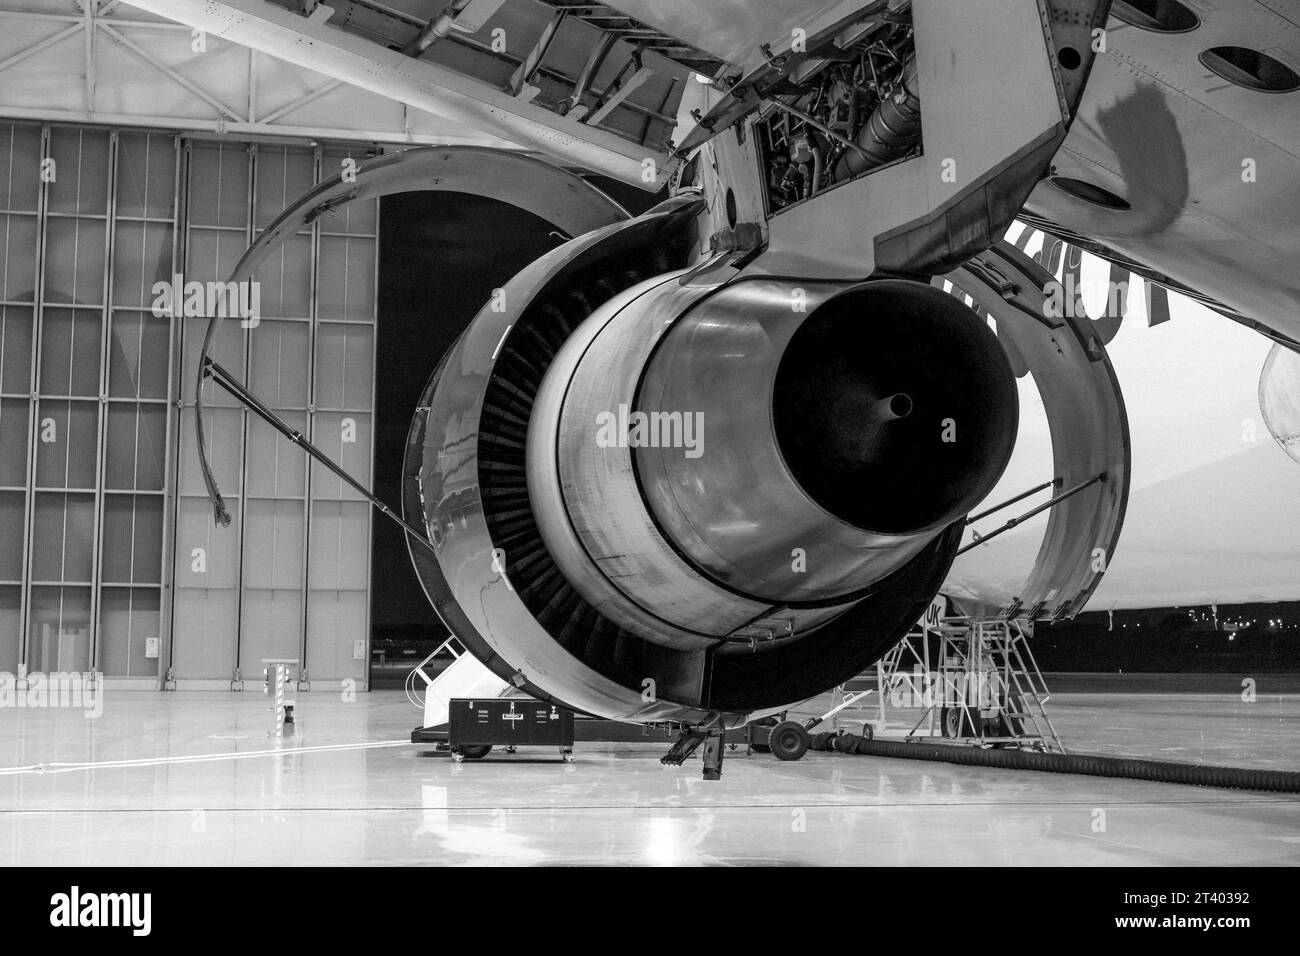 Das Flugzeug repariert im Hangar. Flugzeugmotor auf dem Flügel. Wartung. Schwarzweißfoto. Stockfoto